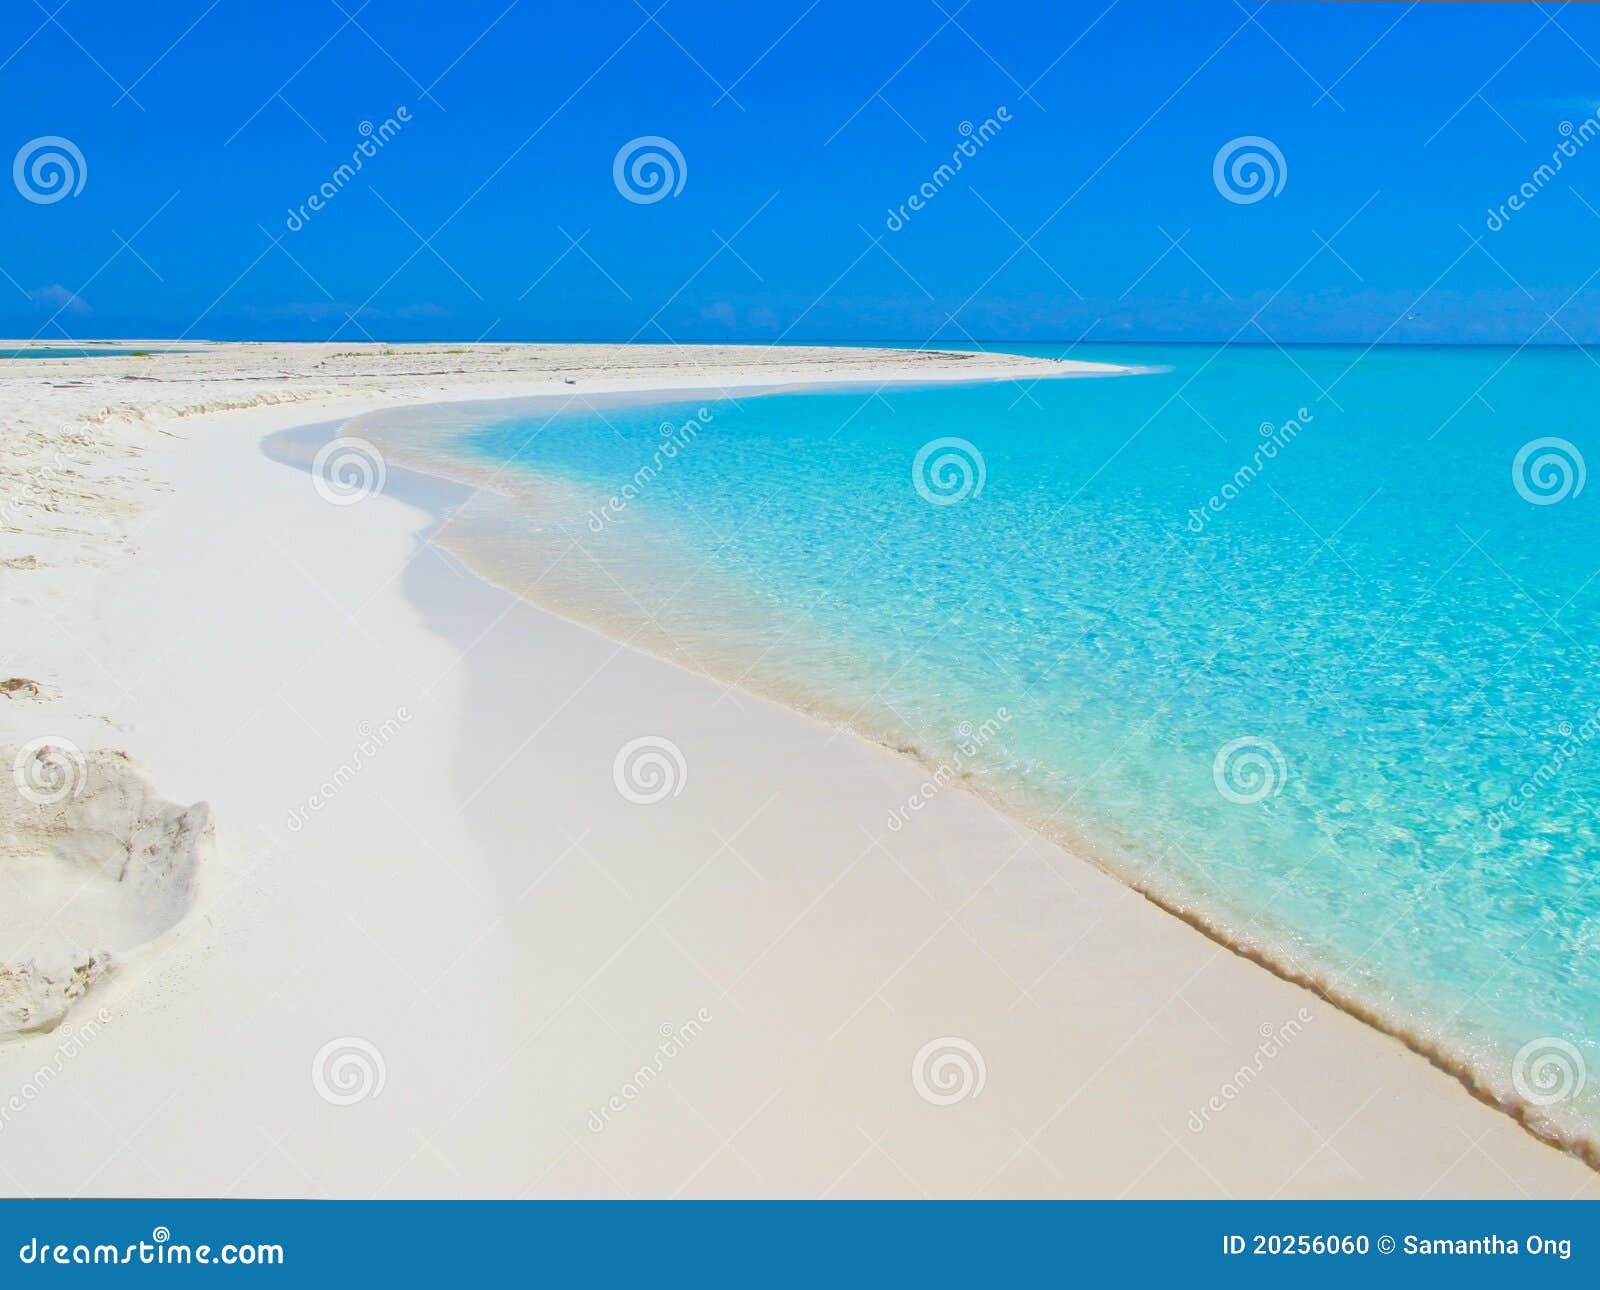 playa paraiso (cayo largo, cuba, caribbeans)